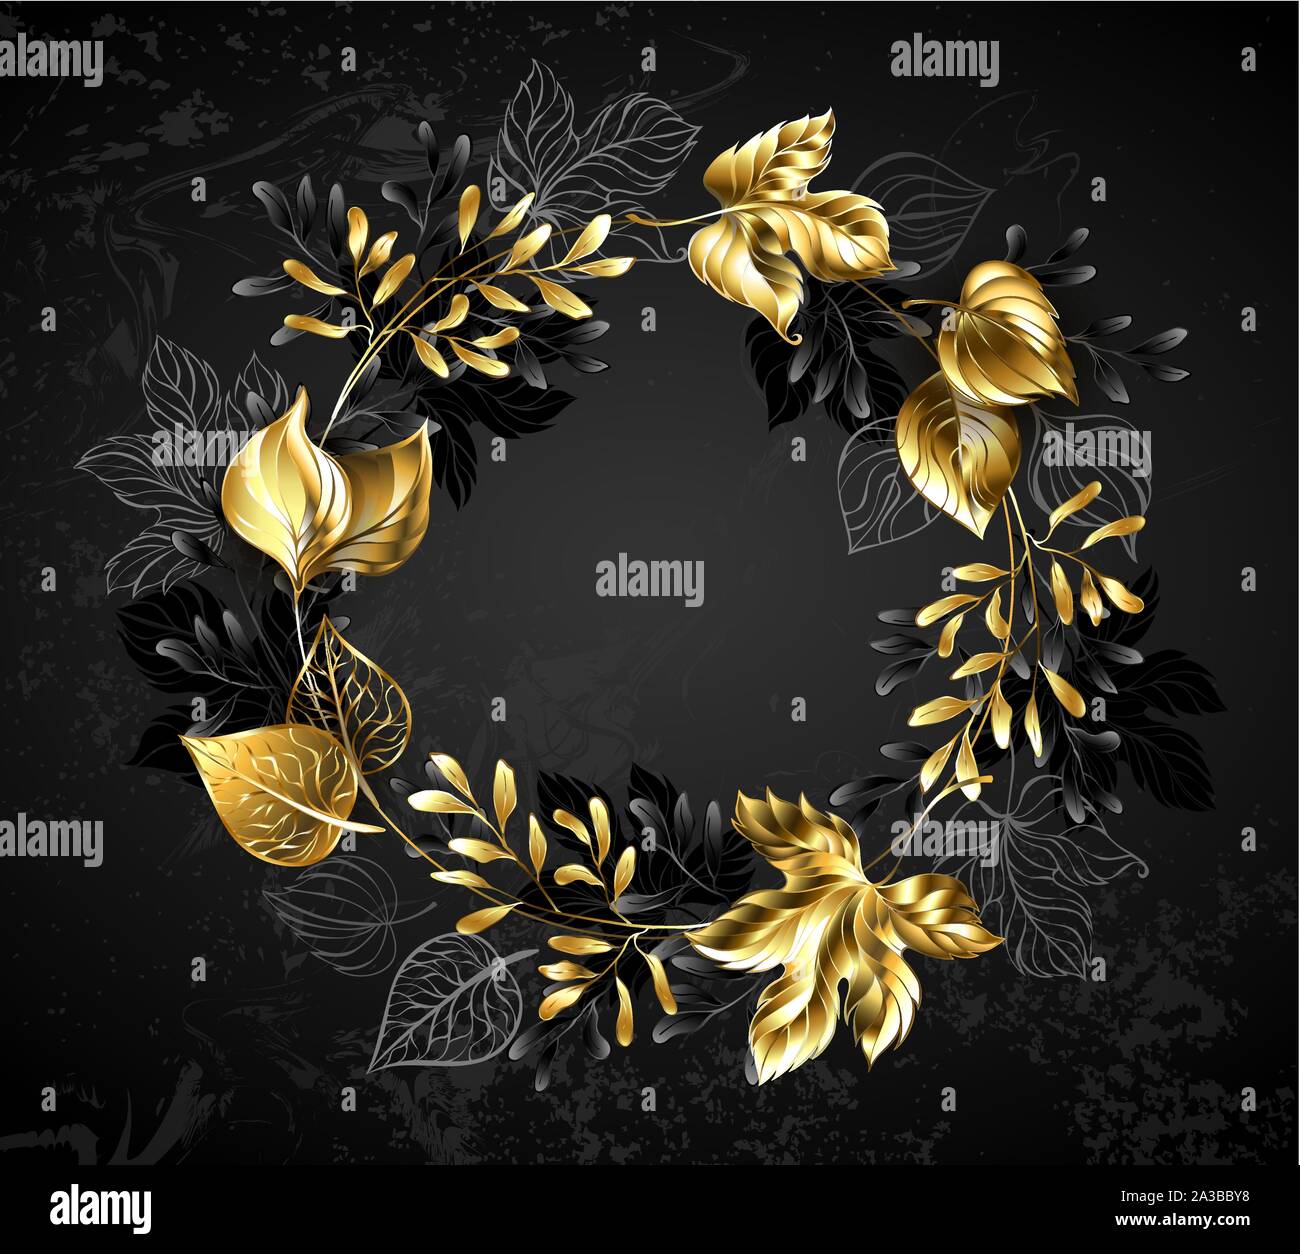 Kranz von Gold, Schmuck dekorative Blätter und Zweige auf Schwarz strukturierten Hintergrund. Stock Vektor